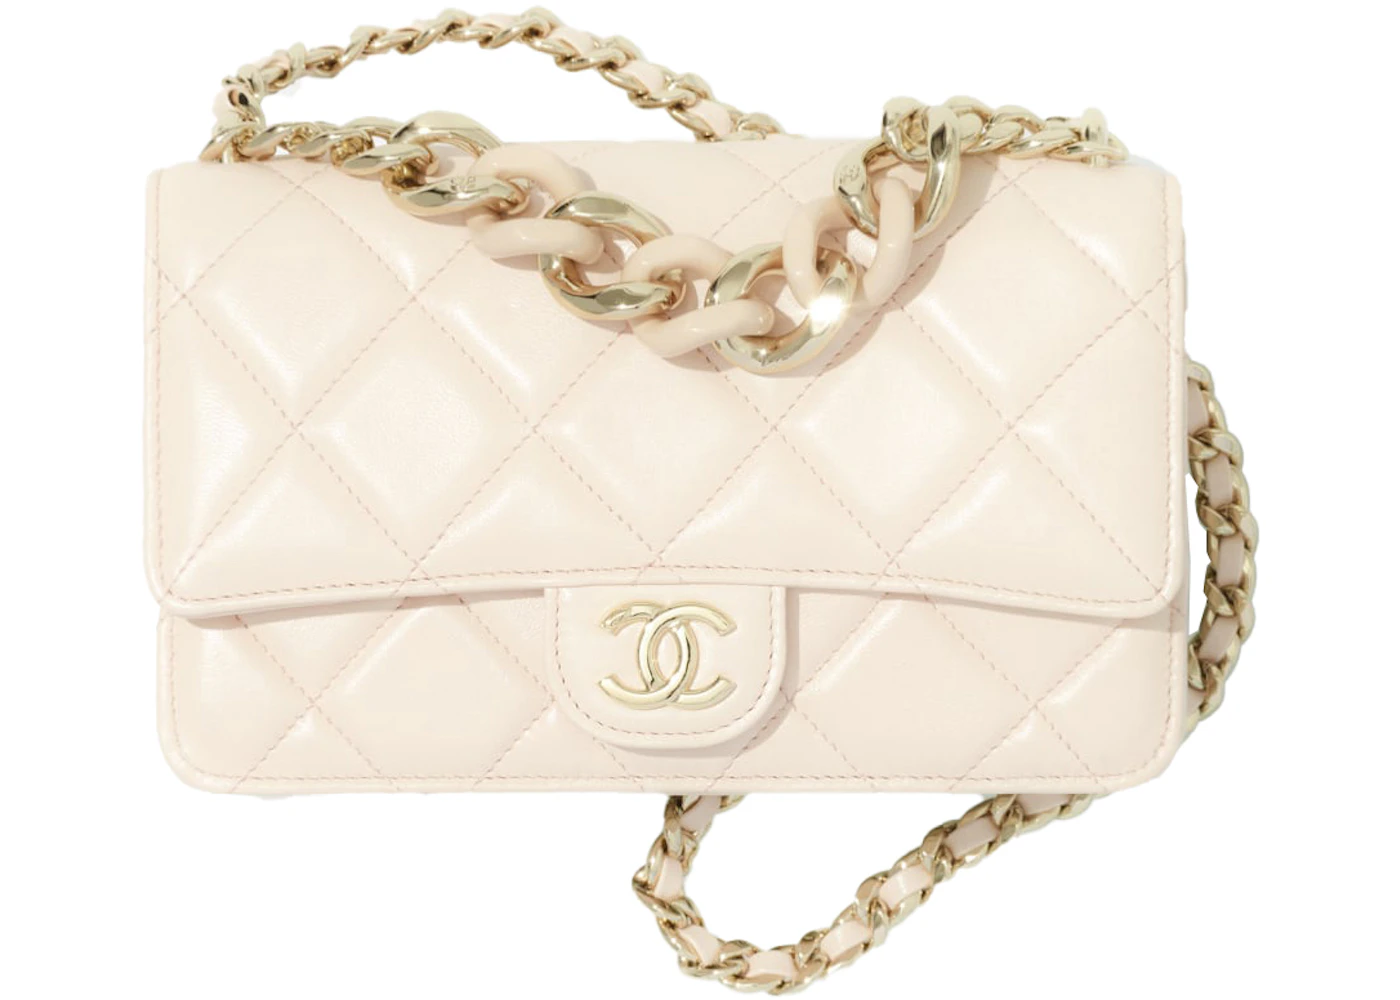 Chanel Wallet on Chain Light Beige